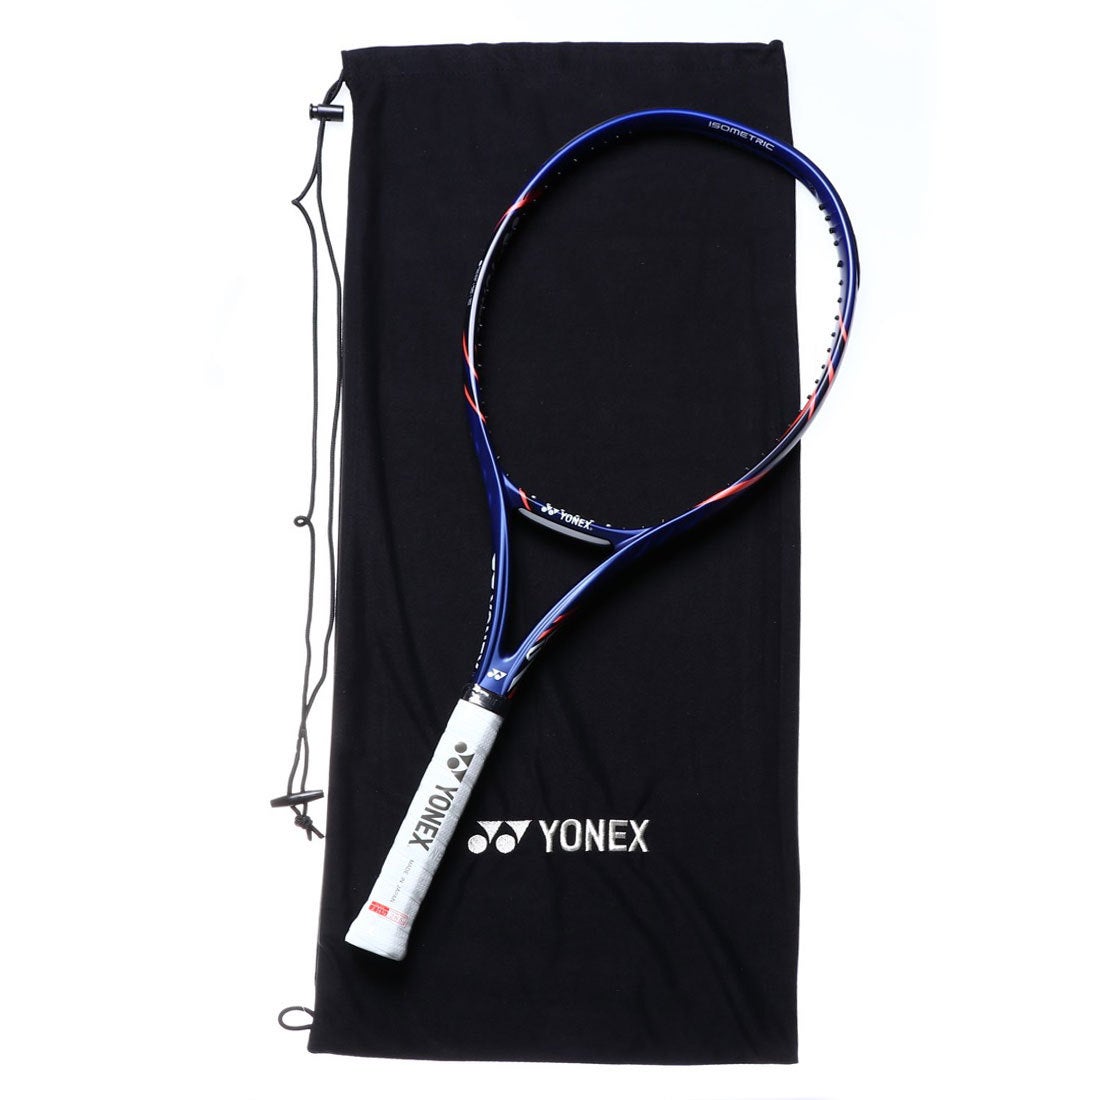 ヨネックス YONEX 硬式テニス 未張りラケット Vコア スピード 19VCS